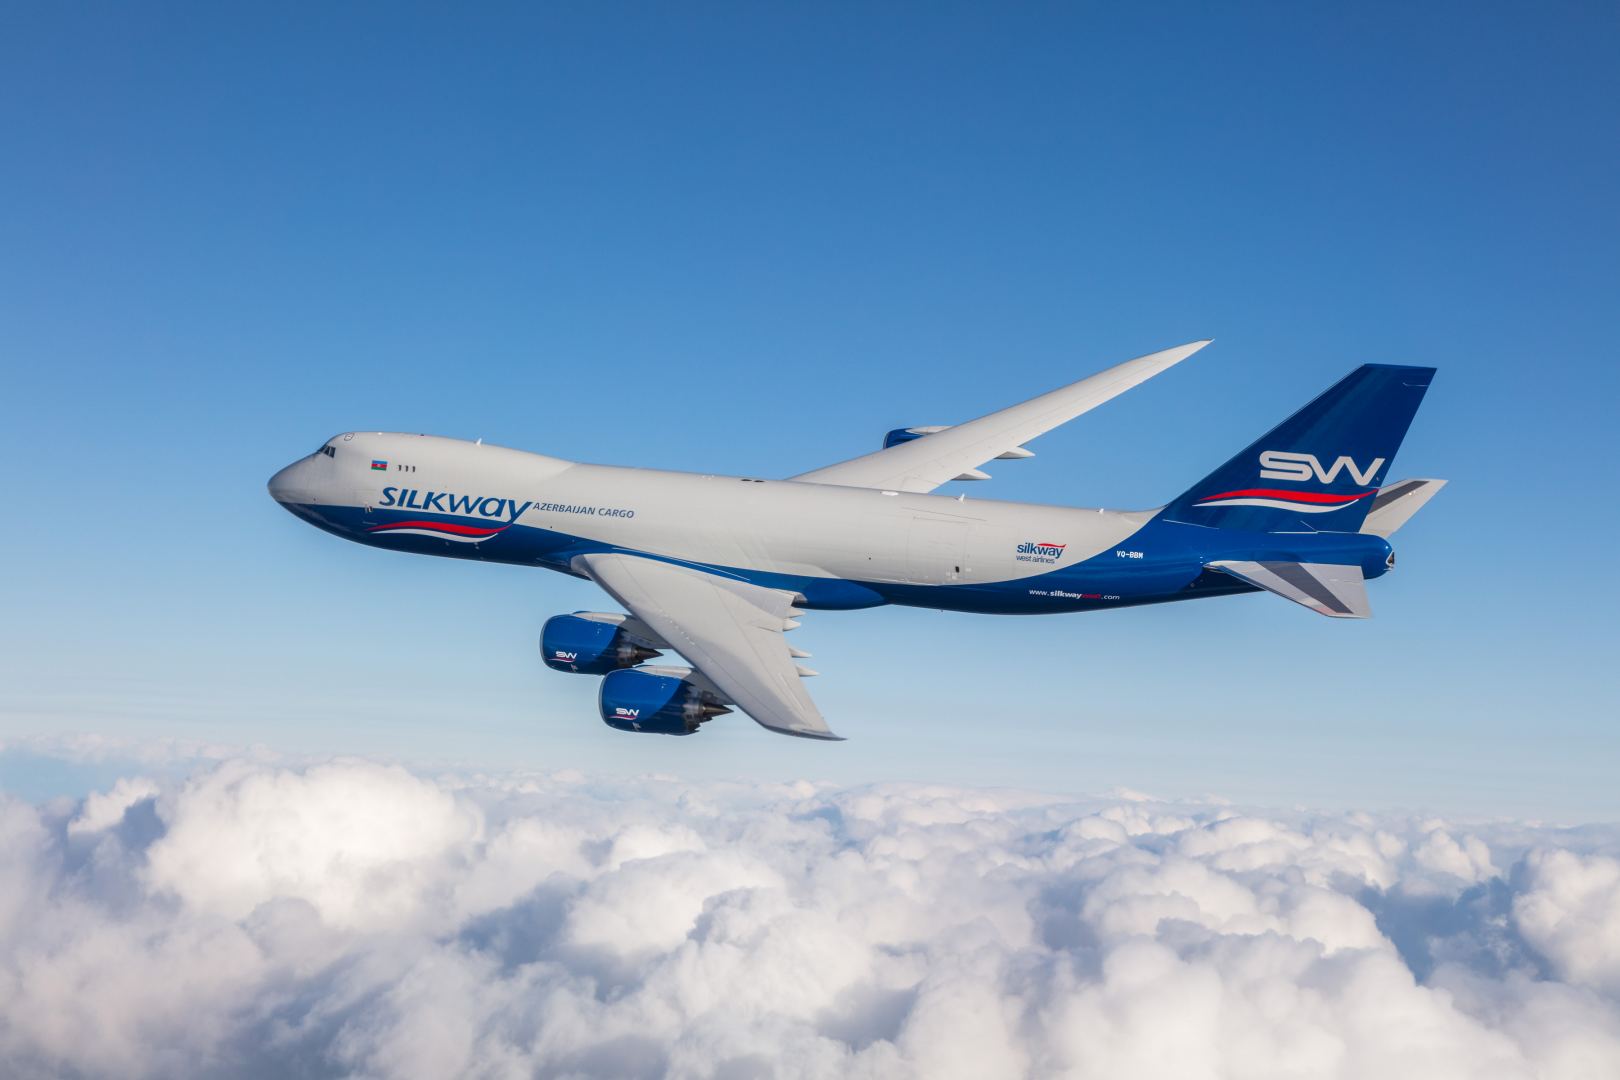 Silk Way West Airlines ABŞ-da qlobal şəbəkəsini genişləndirməkdə davam edir